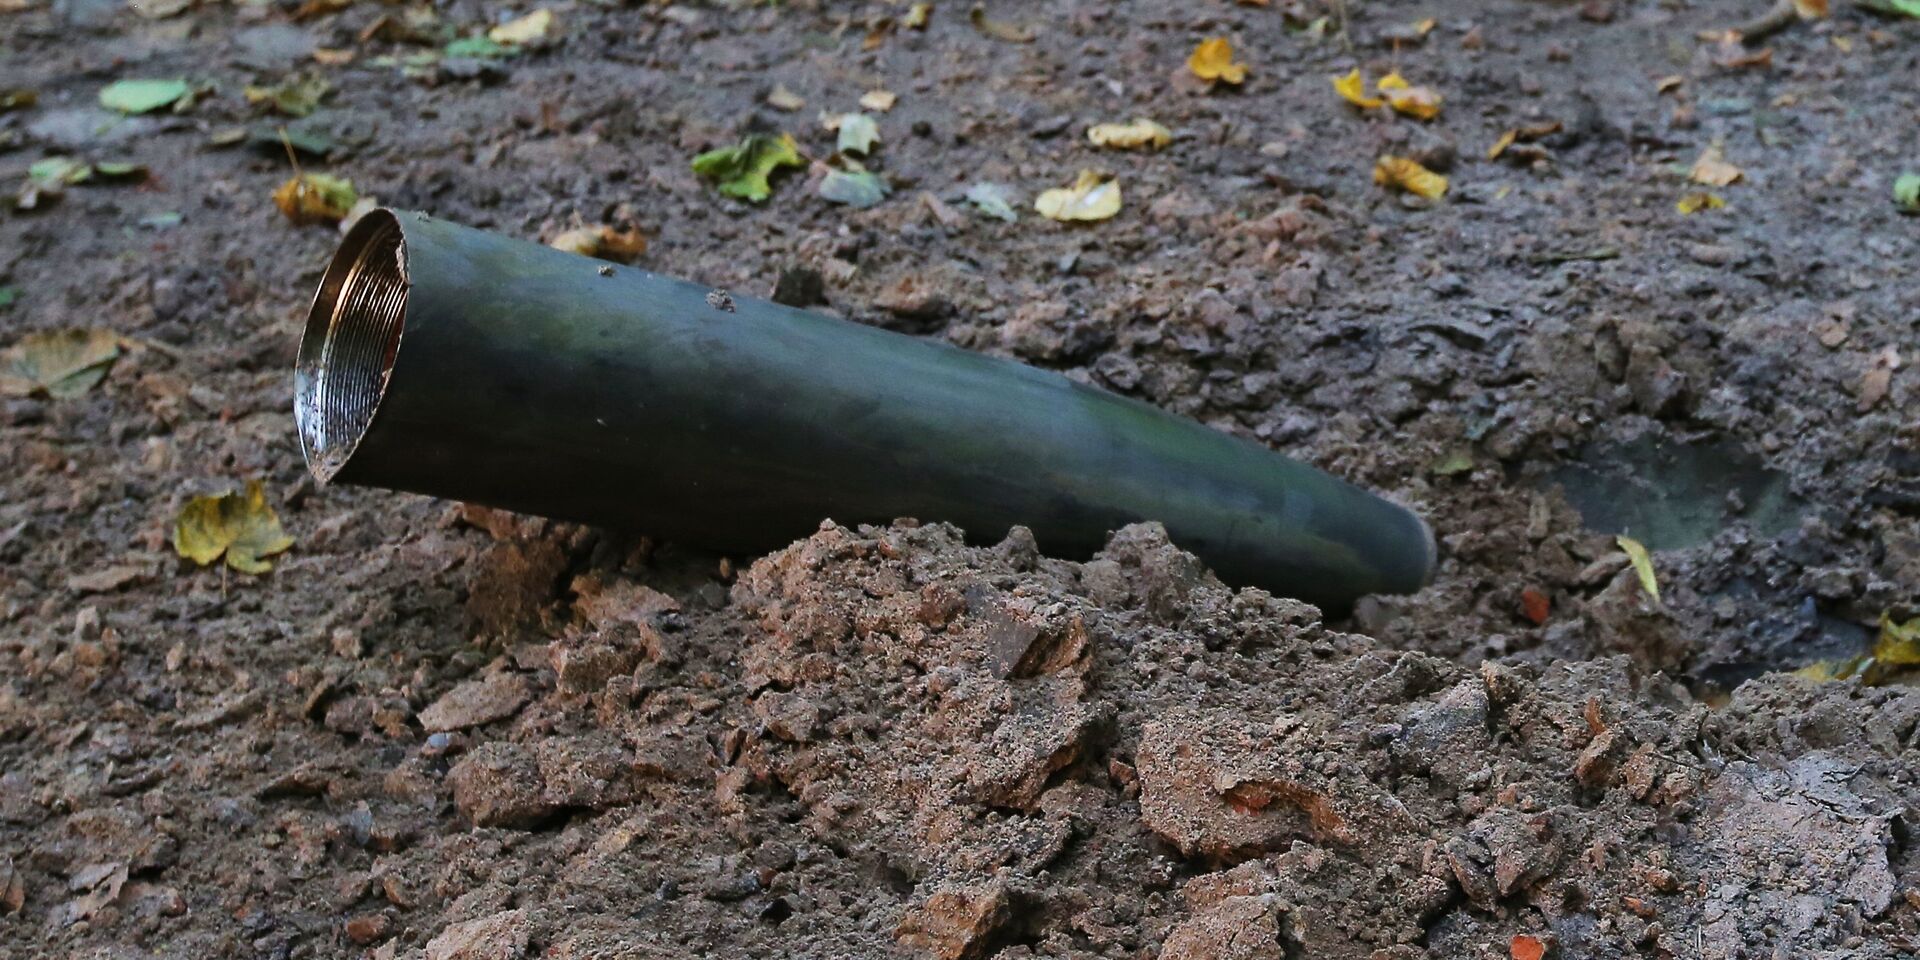 Оболочка снаряда в лесу после взрыва на военном складе под Черниговом. 9 октября 2018 - ИноСМИ, 1920, 01.08.2022